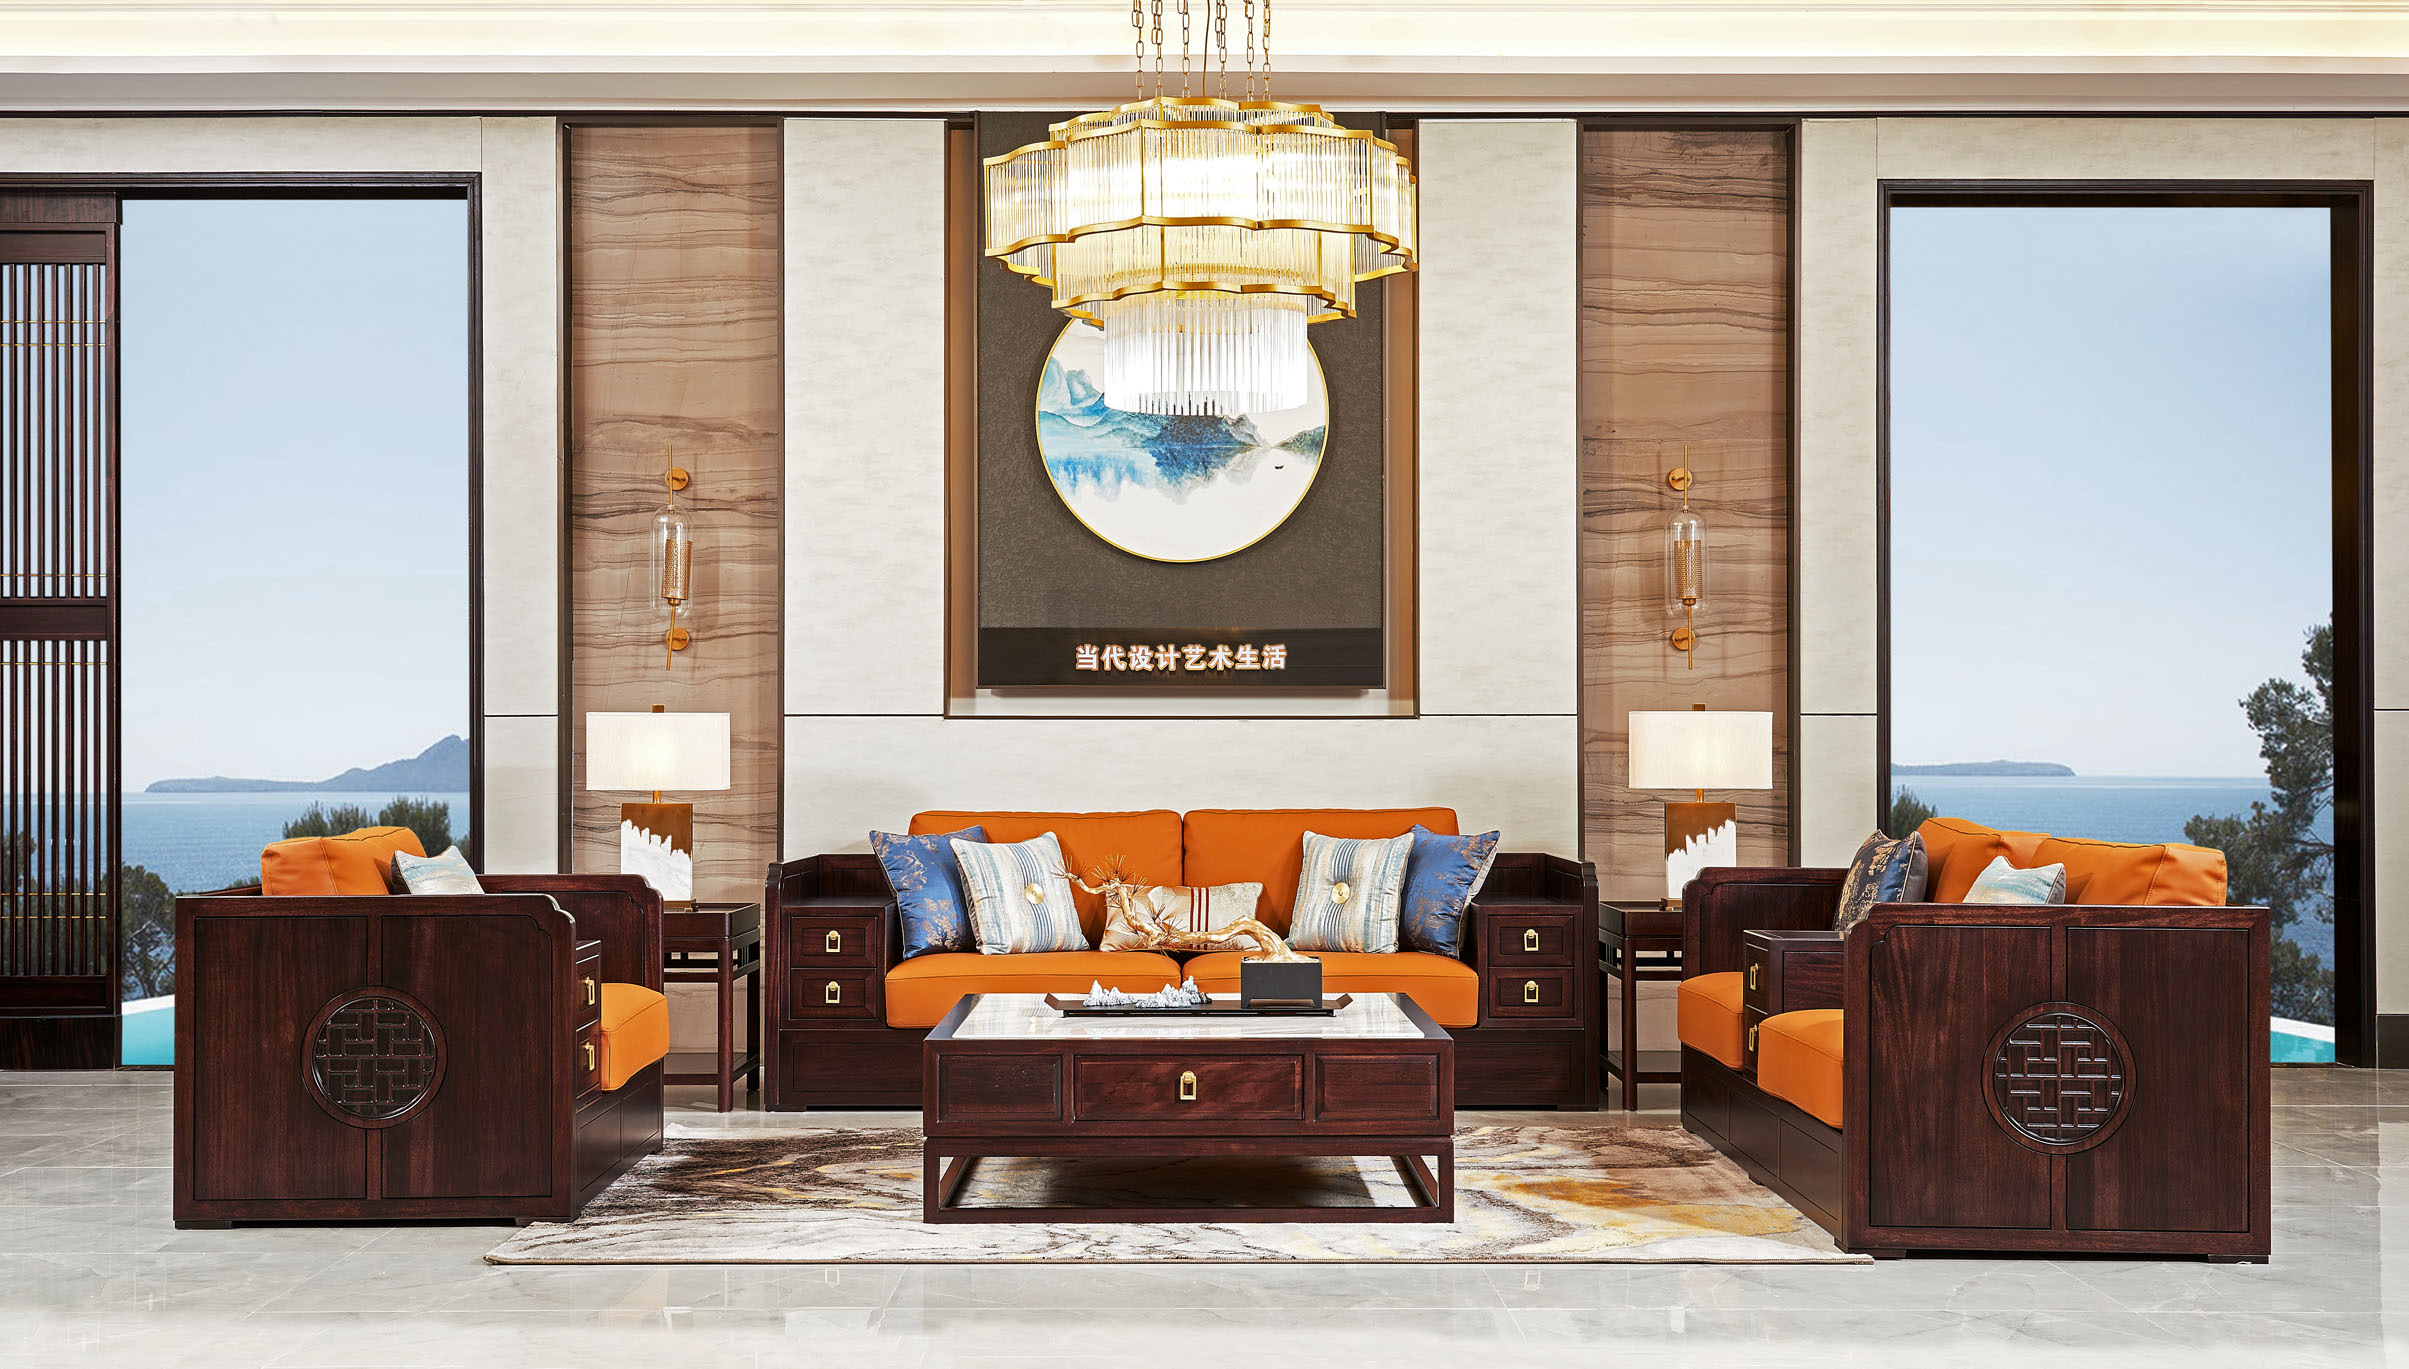 打造富有东方美学意境的家具,它那端庄优雅的紫檀色,激情似火的原木色